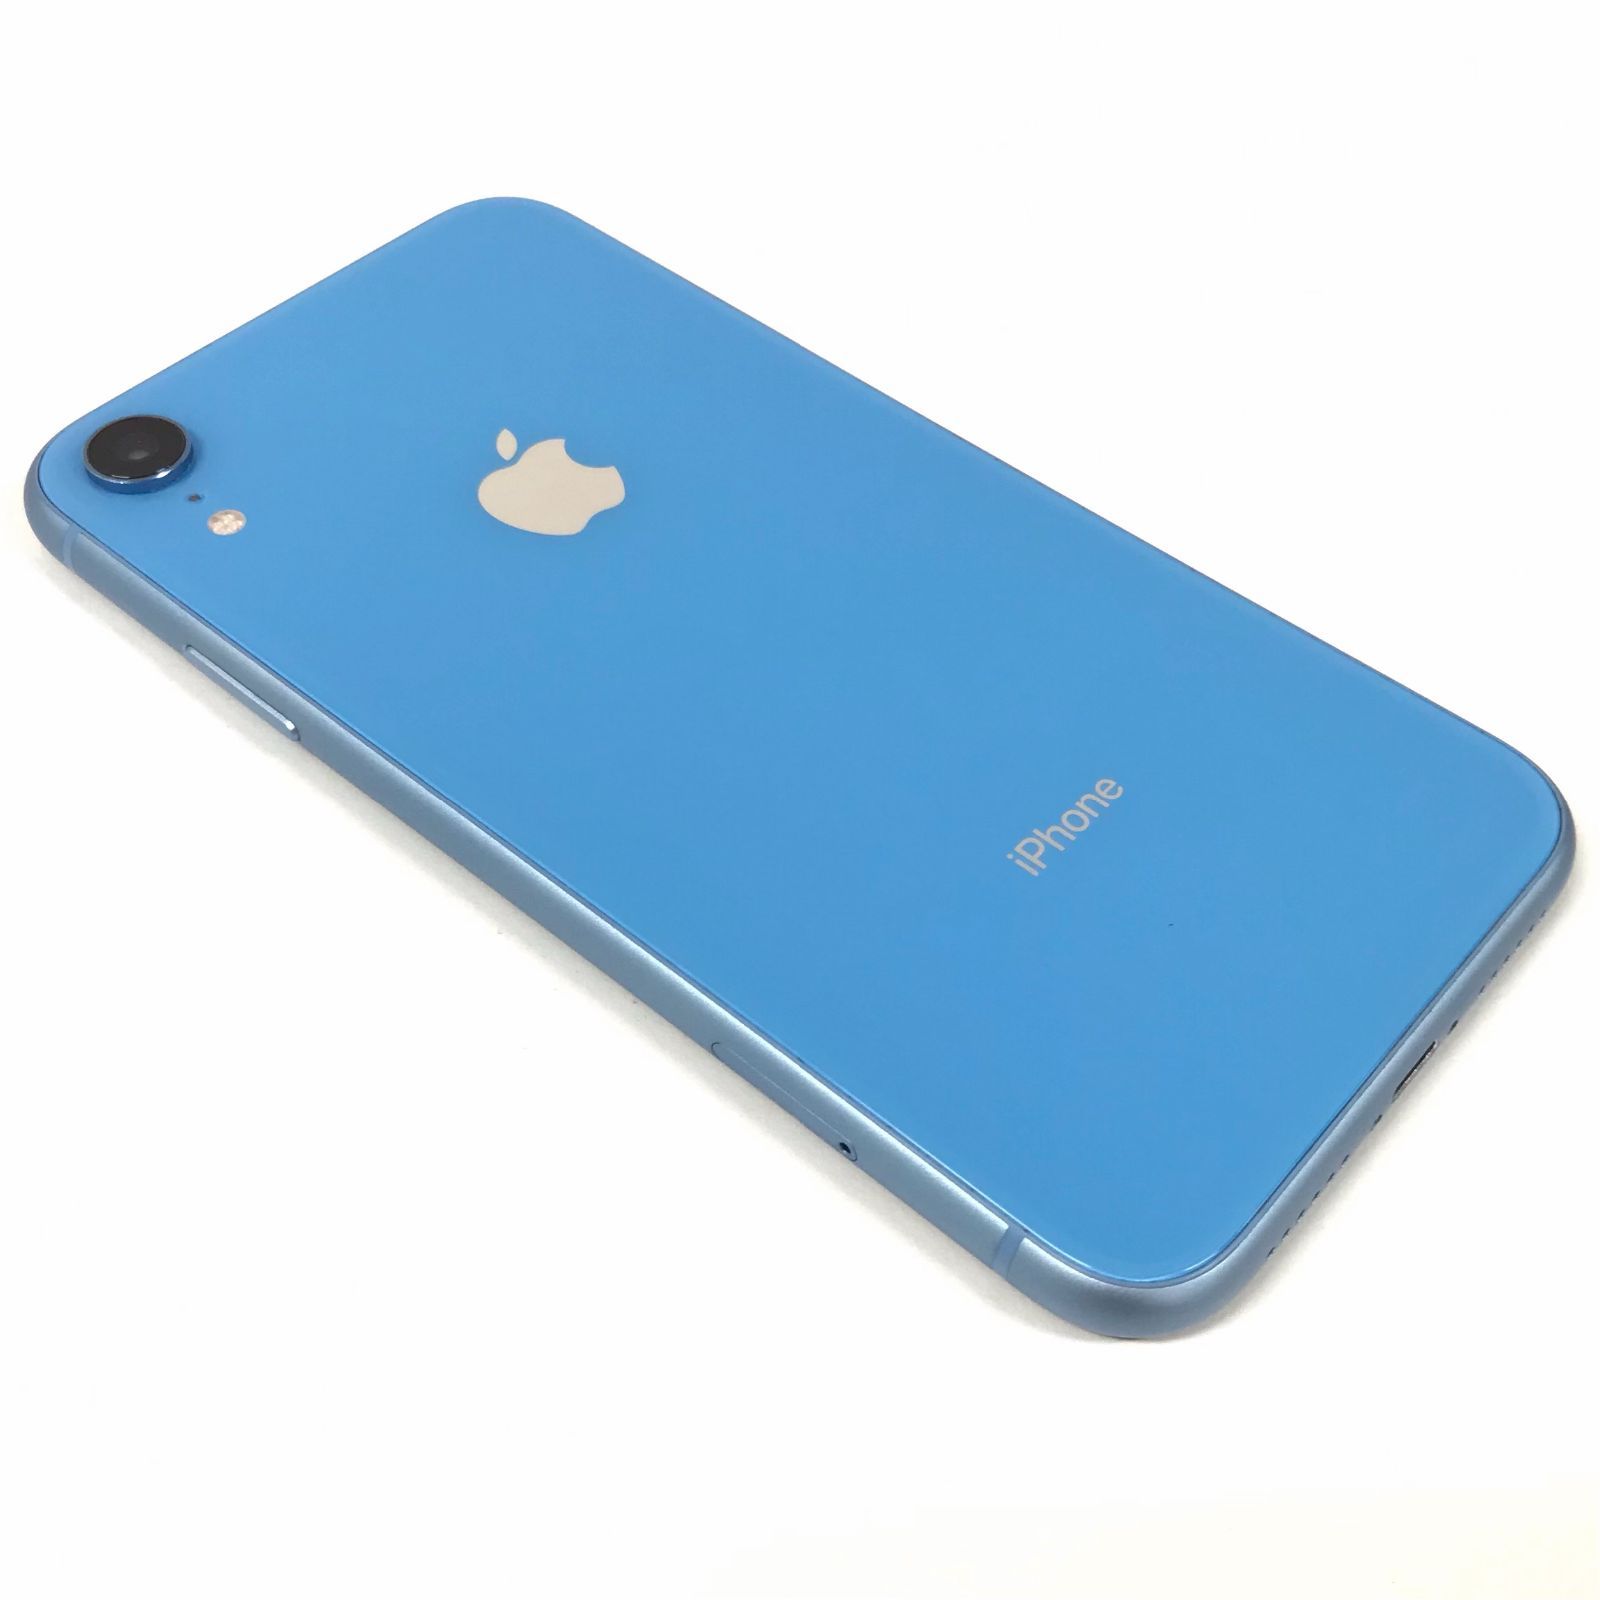 θ【SIMロック解除済】iPhone XR 128GB ブルー MT0U2J/A - メルカリ